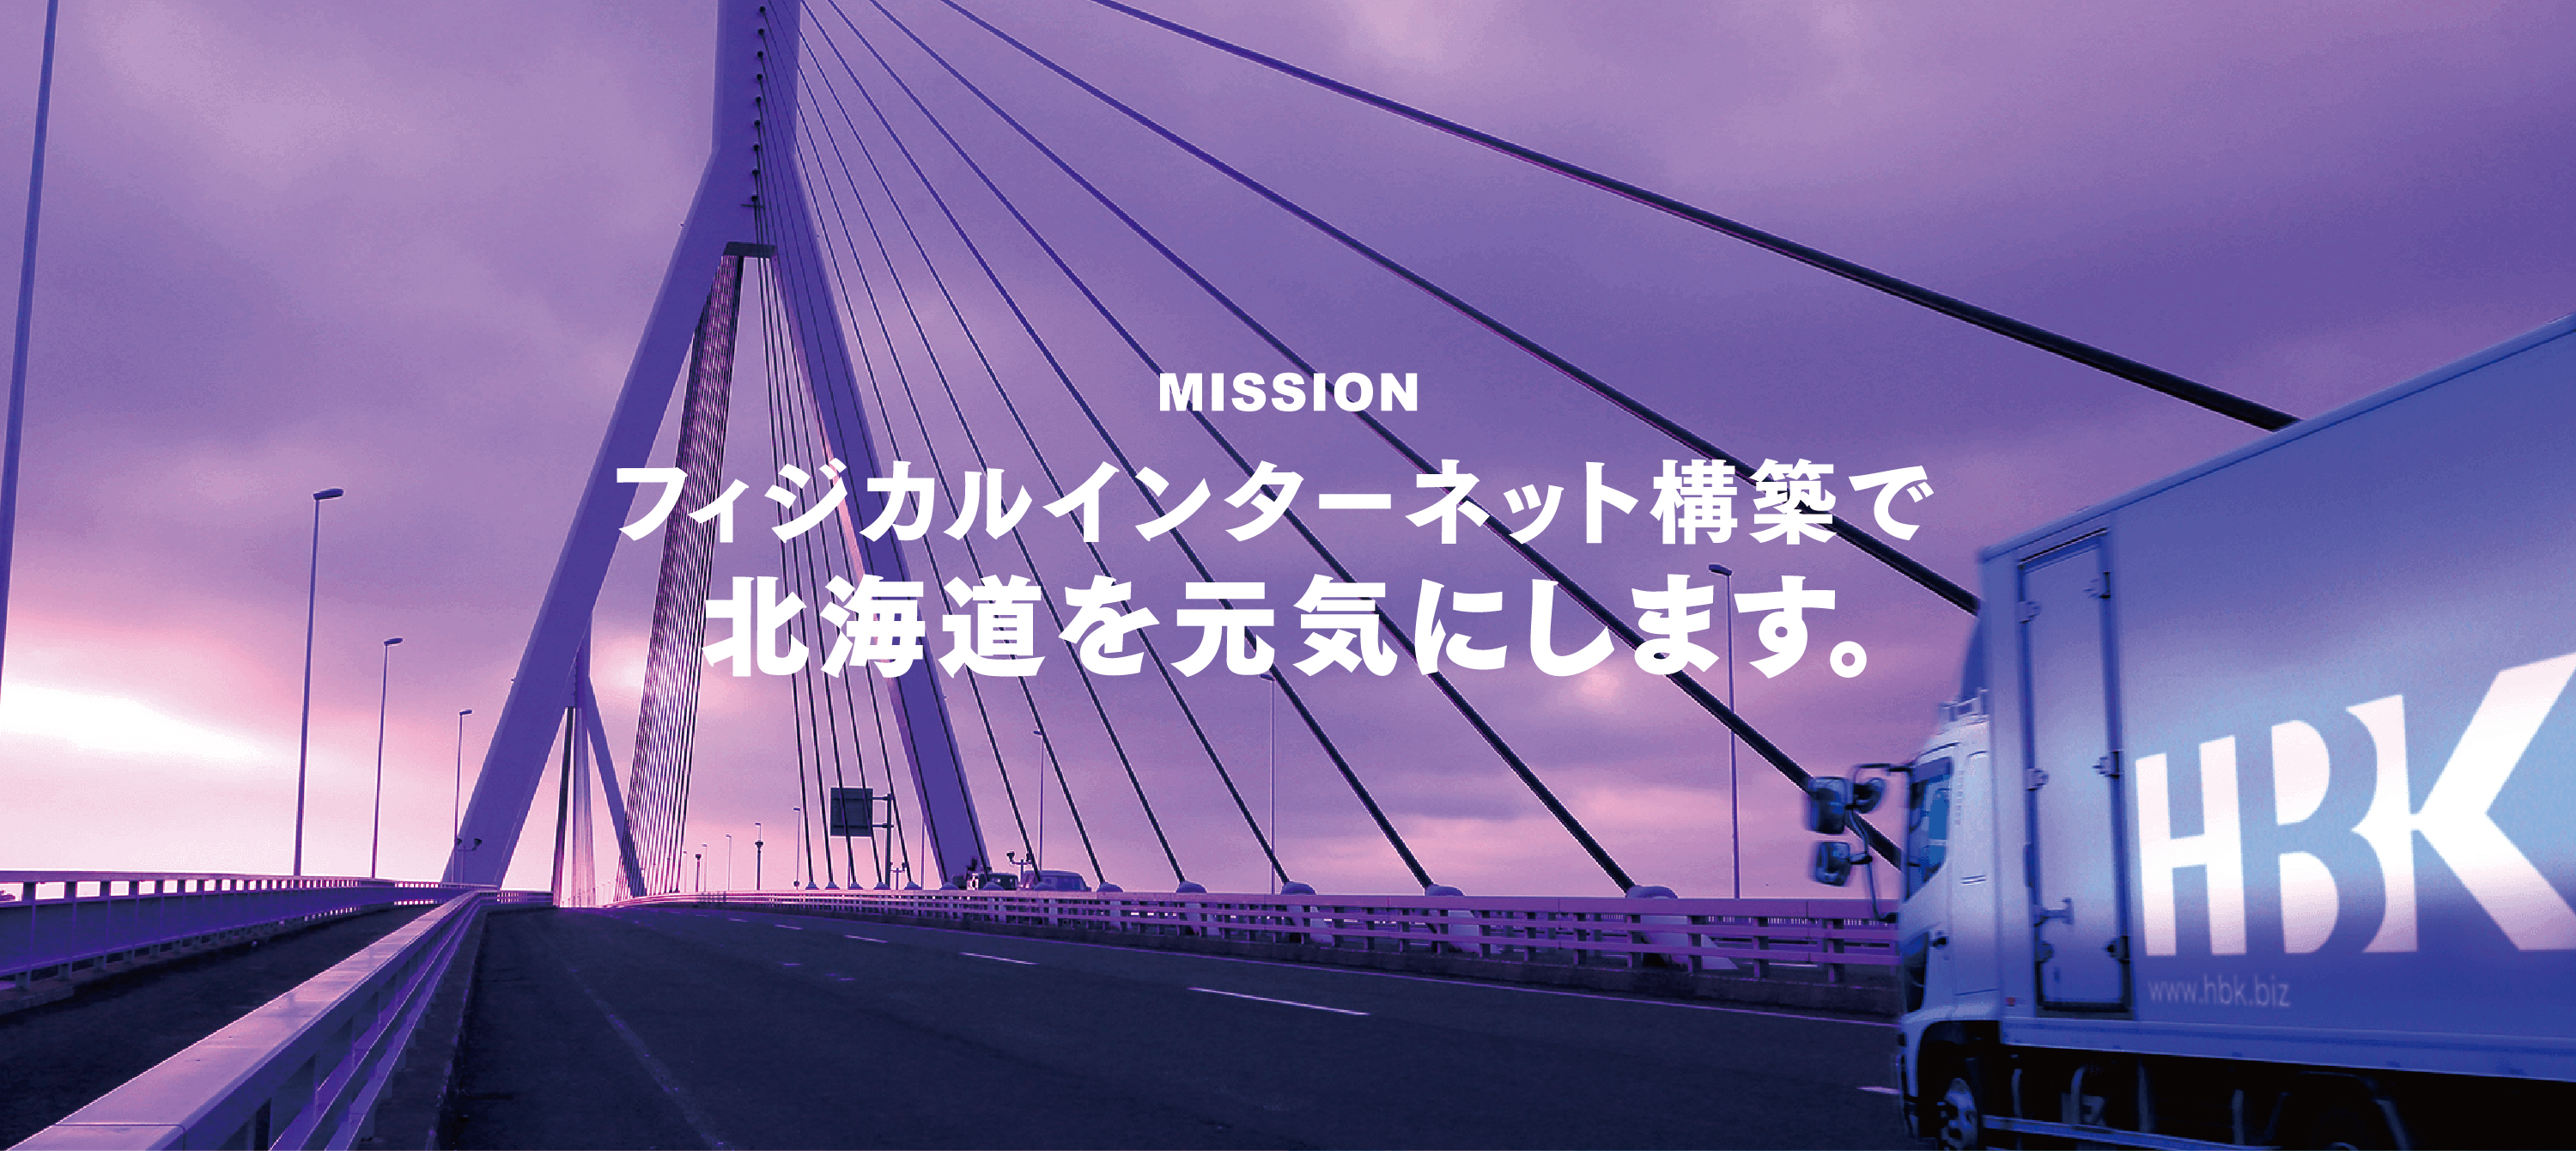 MISSION　フィジカルインターネット構築で北海道を元気にします。